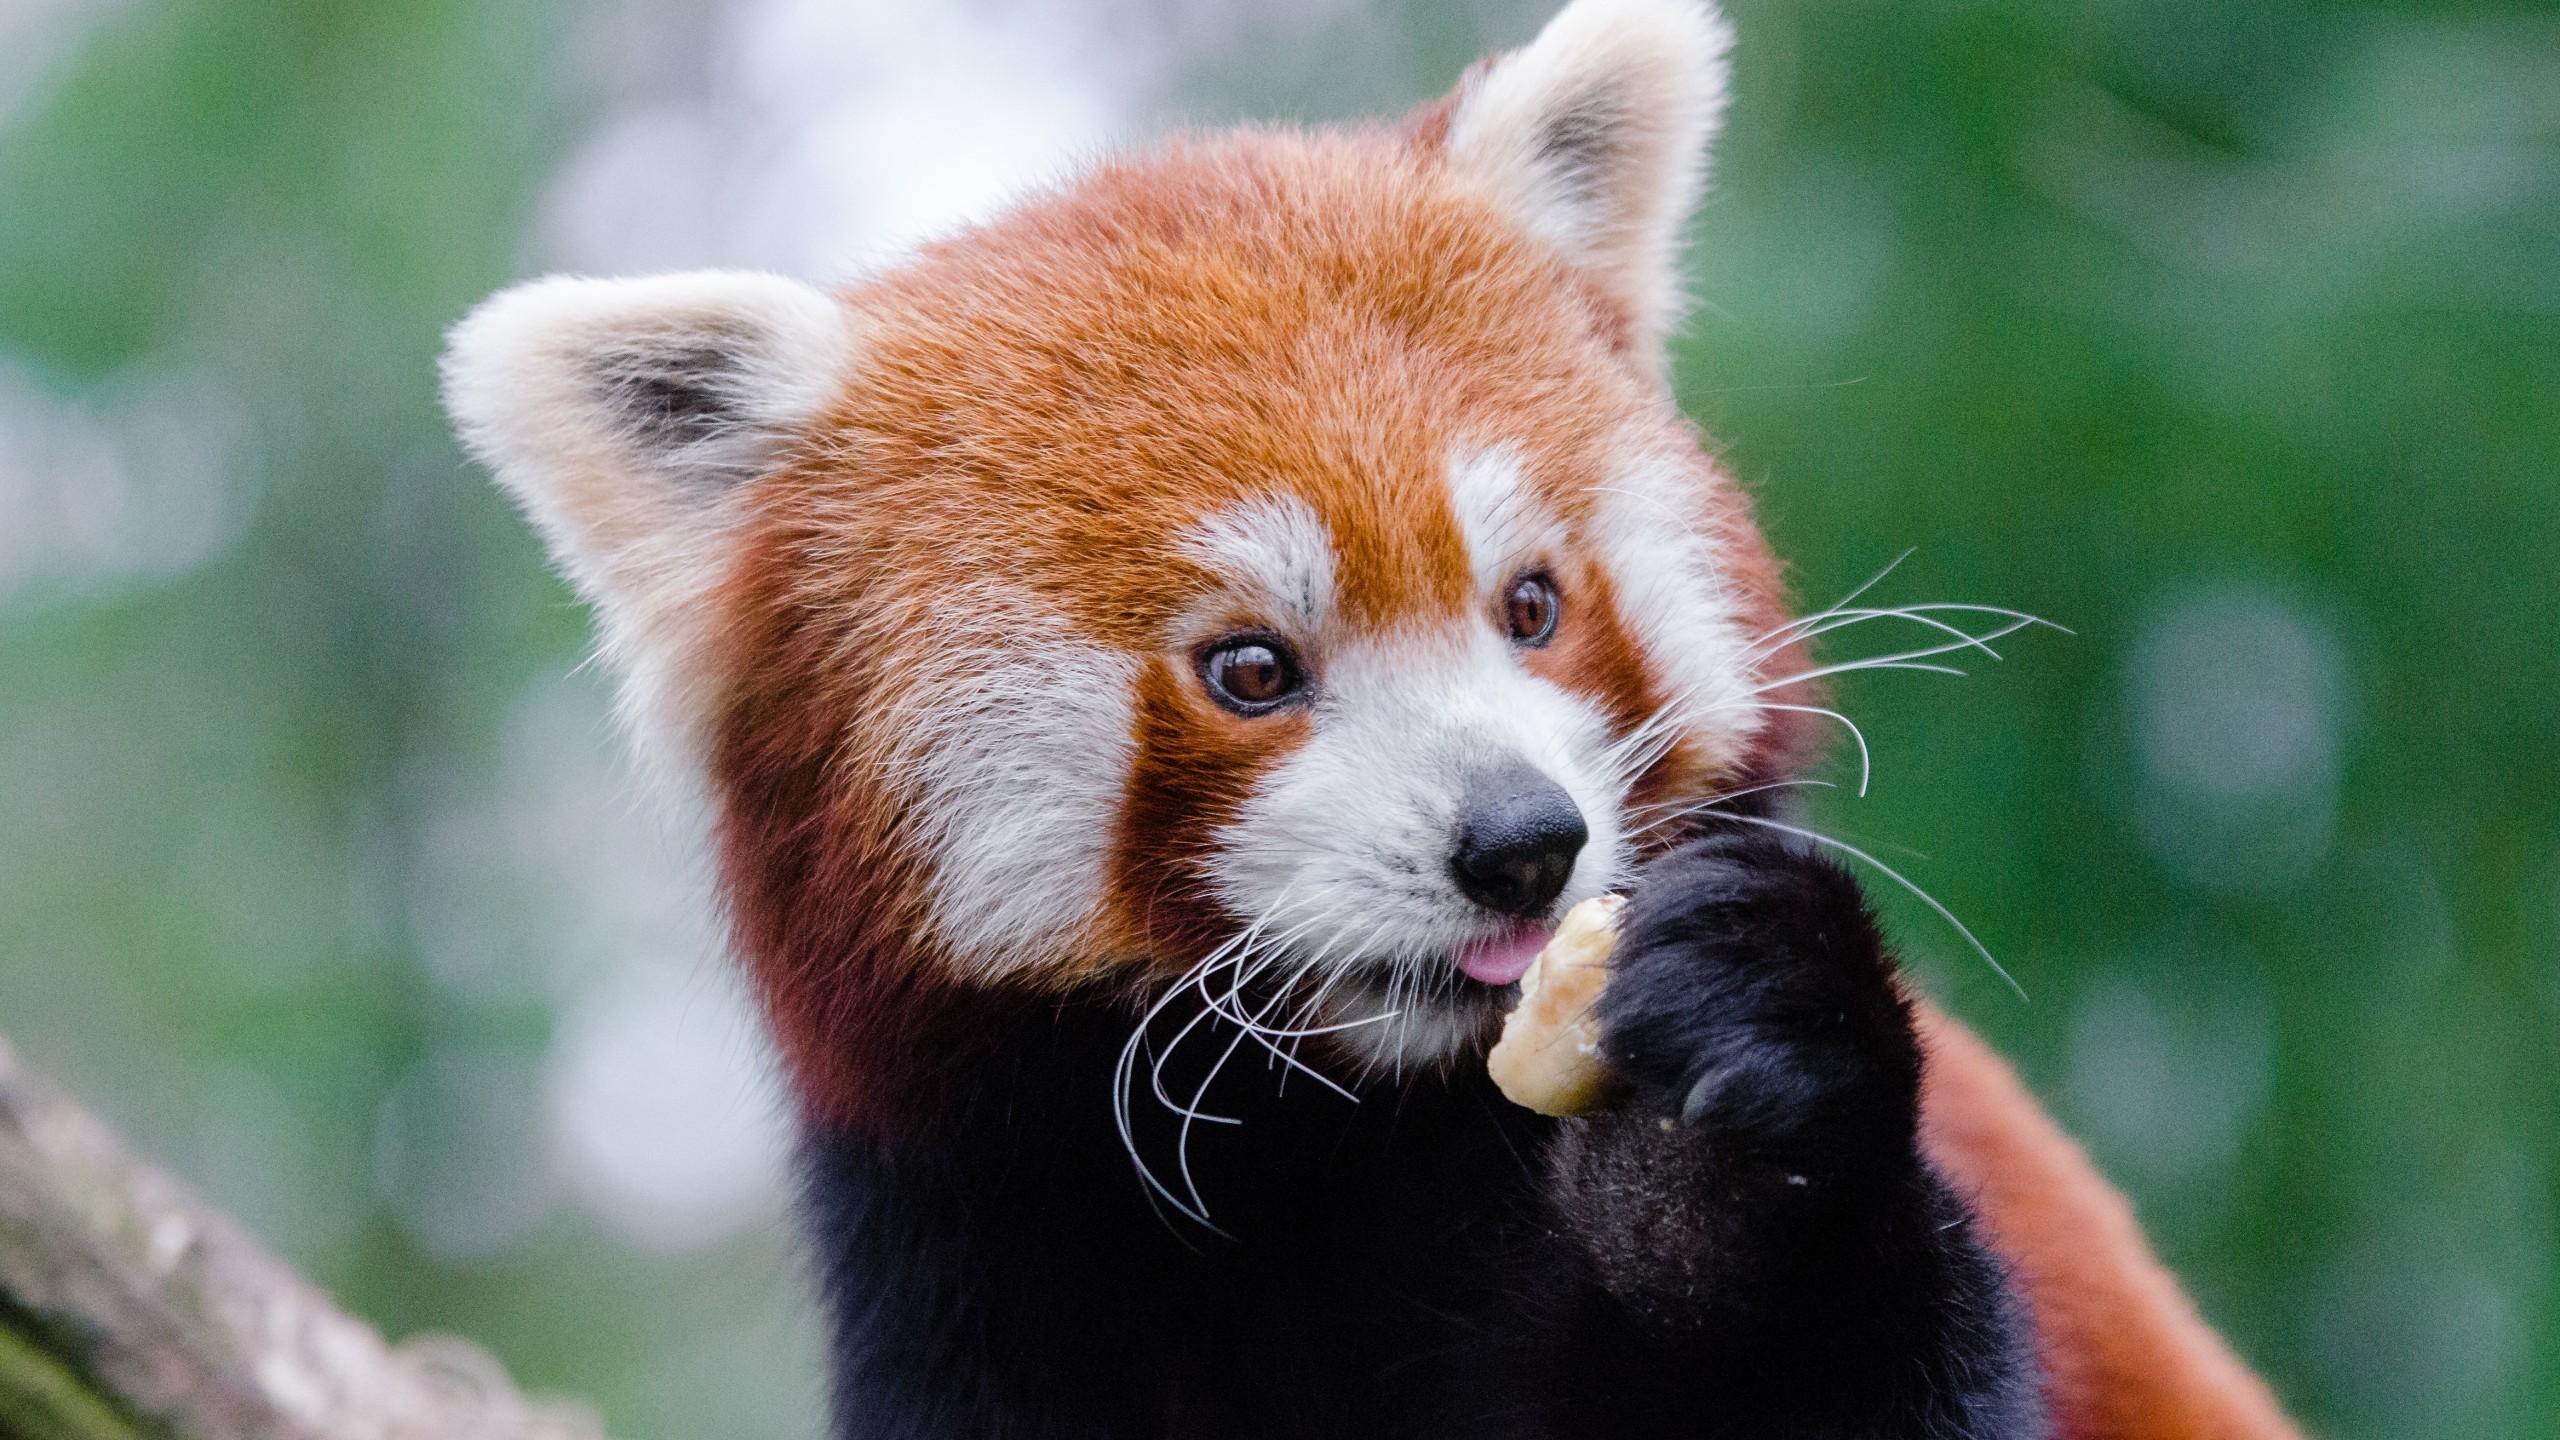 Download 2560x1440 Red Panda, Cute, Eating Wallpaper